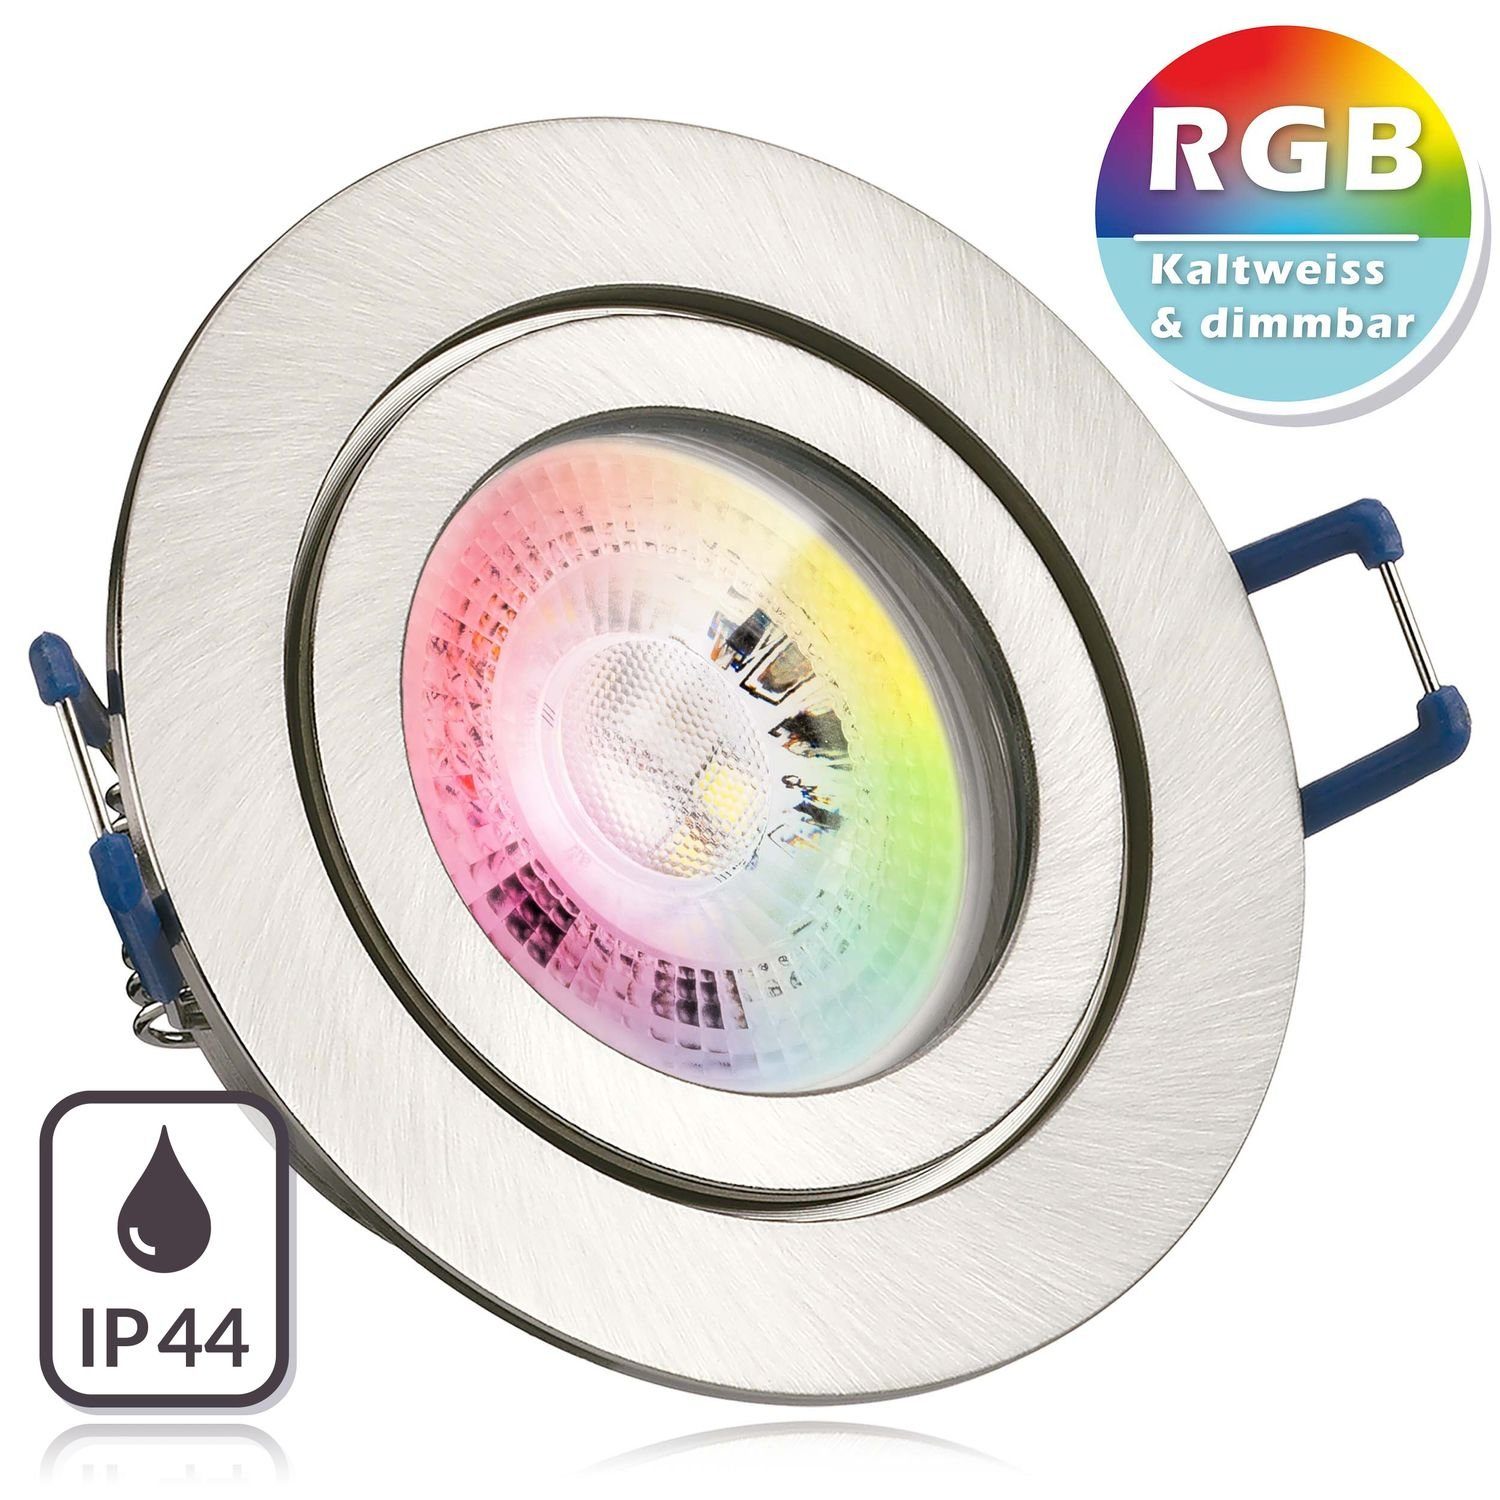 Einbaustrahler edelstahl silber GU10 / Set RGB LED m LEDANDO Einbaustrahler gebürstet LED IP44 in